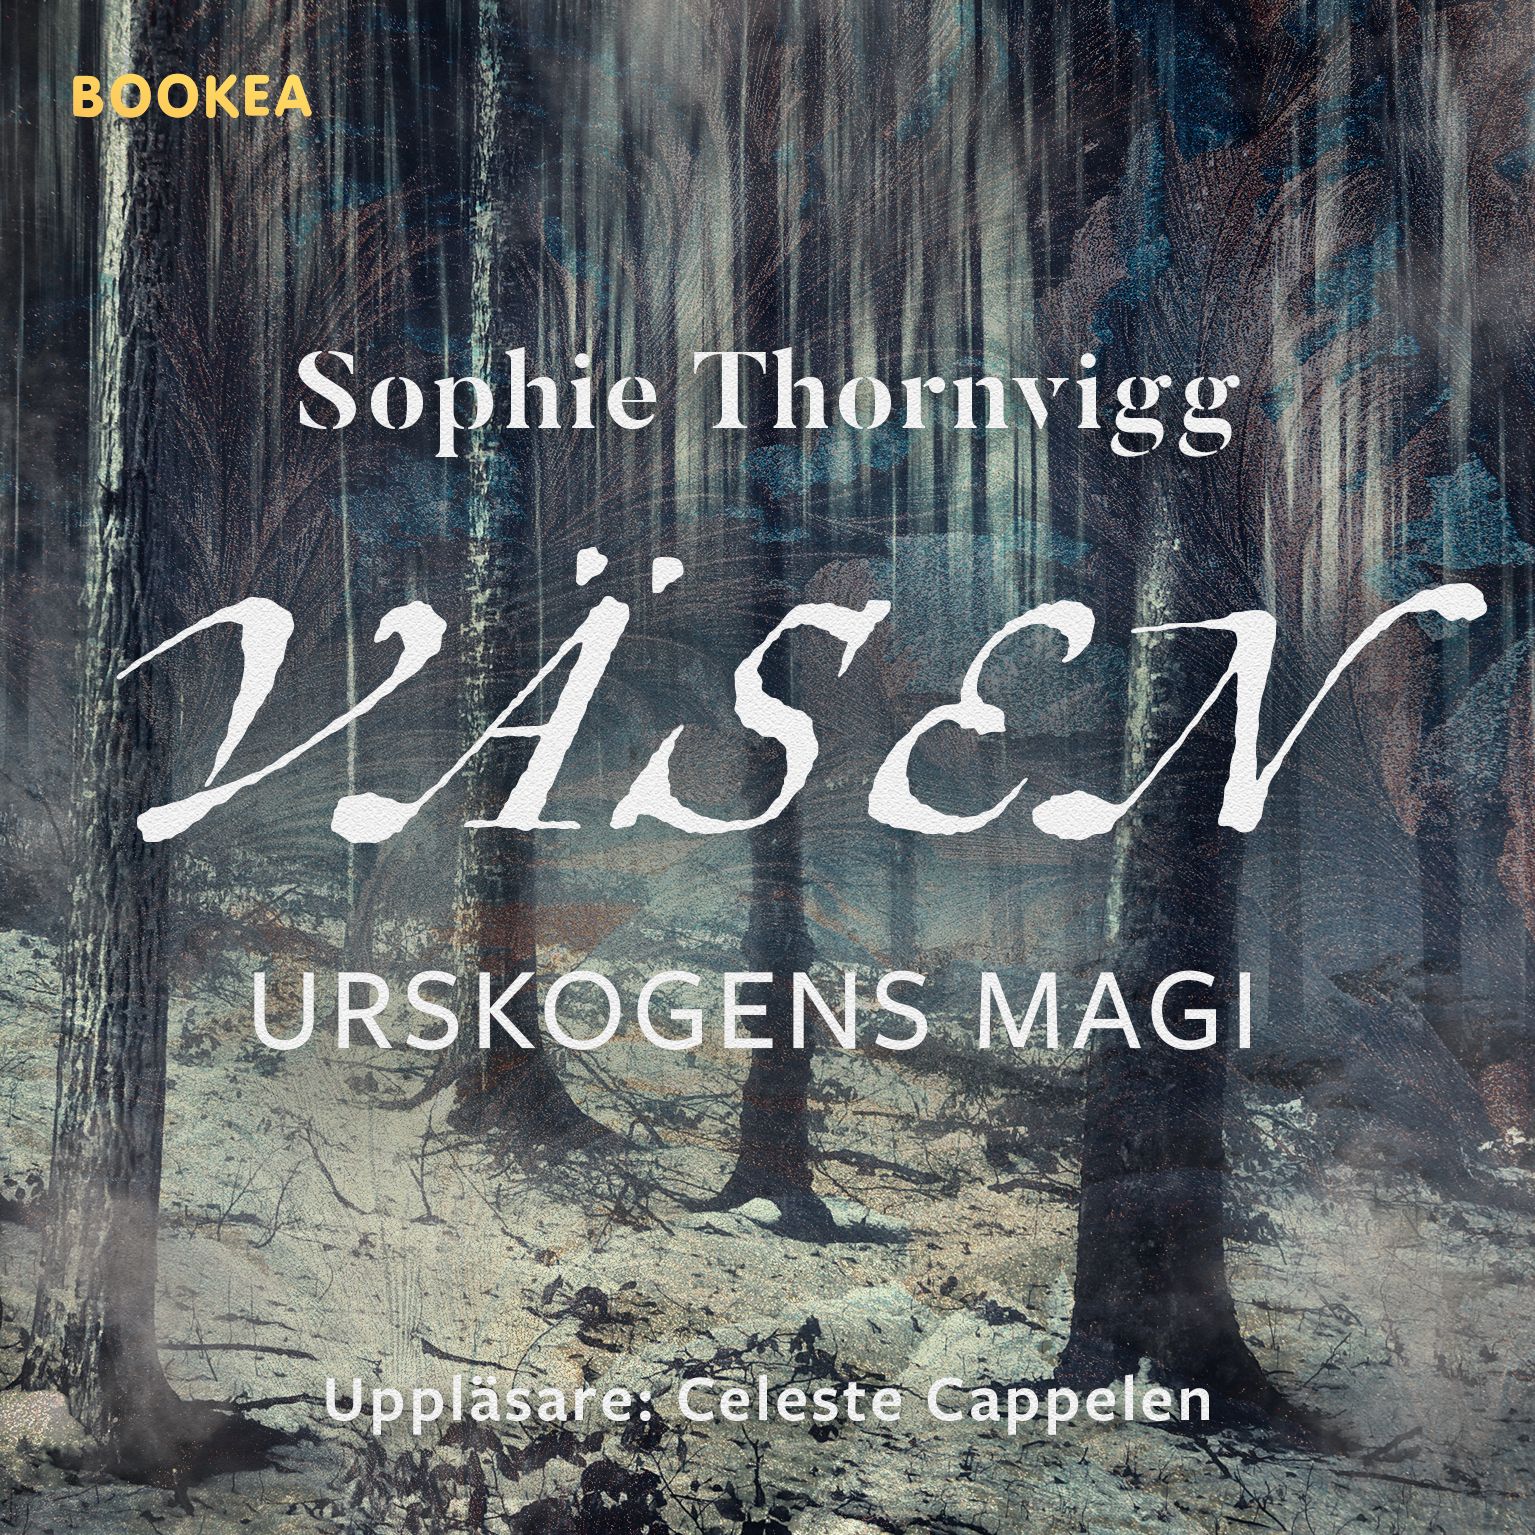 Väsen, lydbog af Sophie Thornvigg